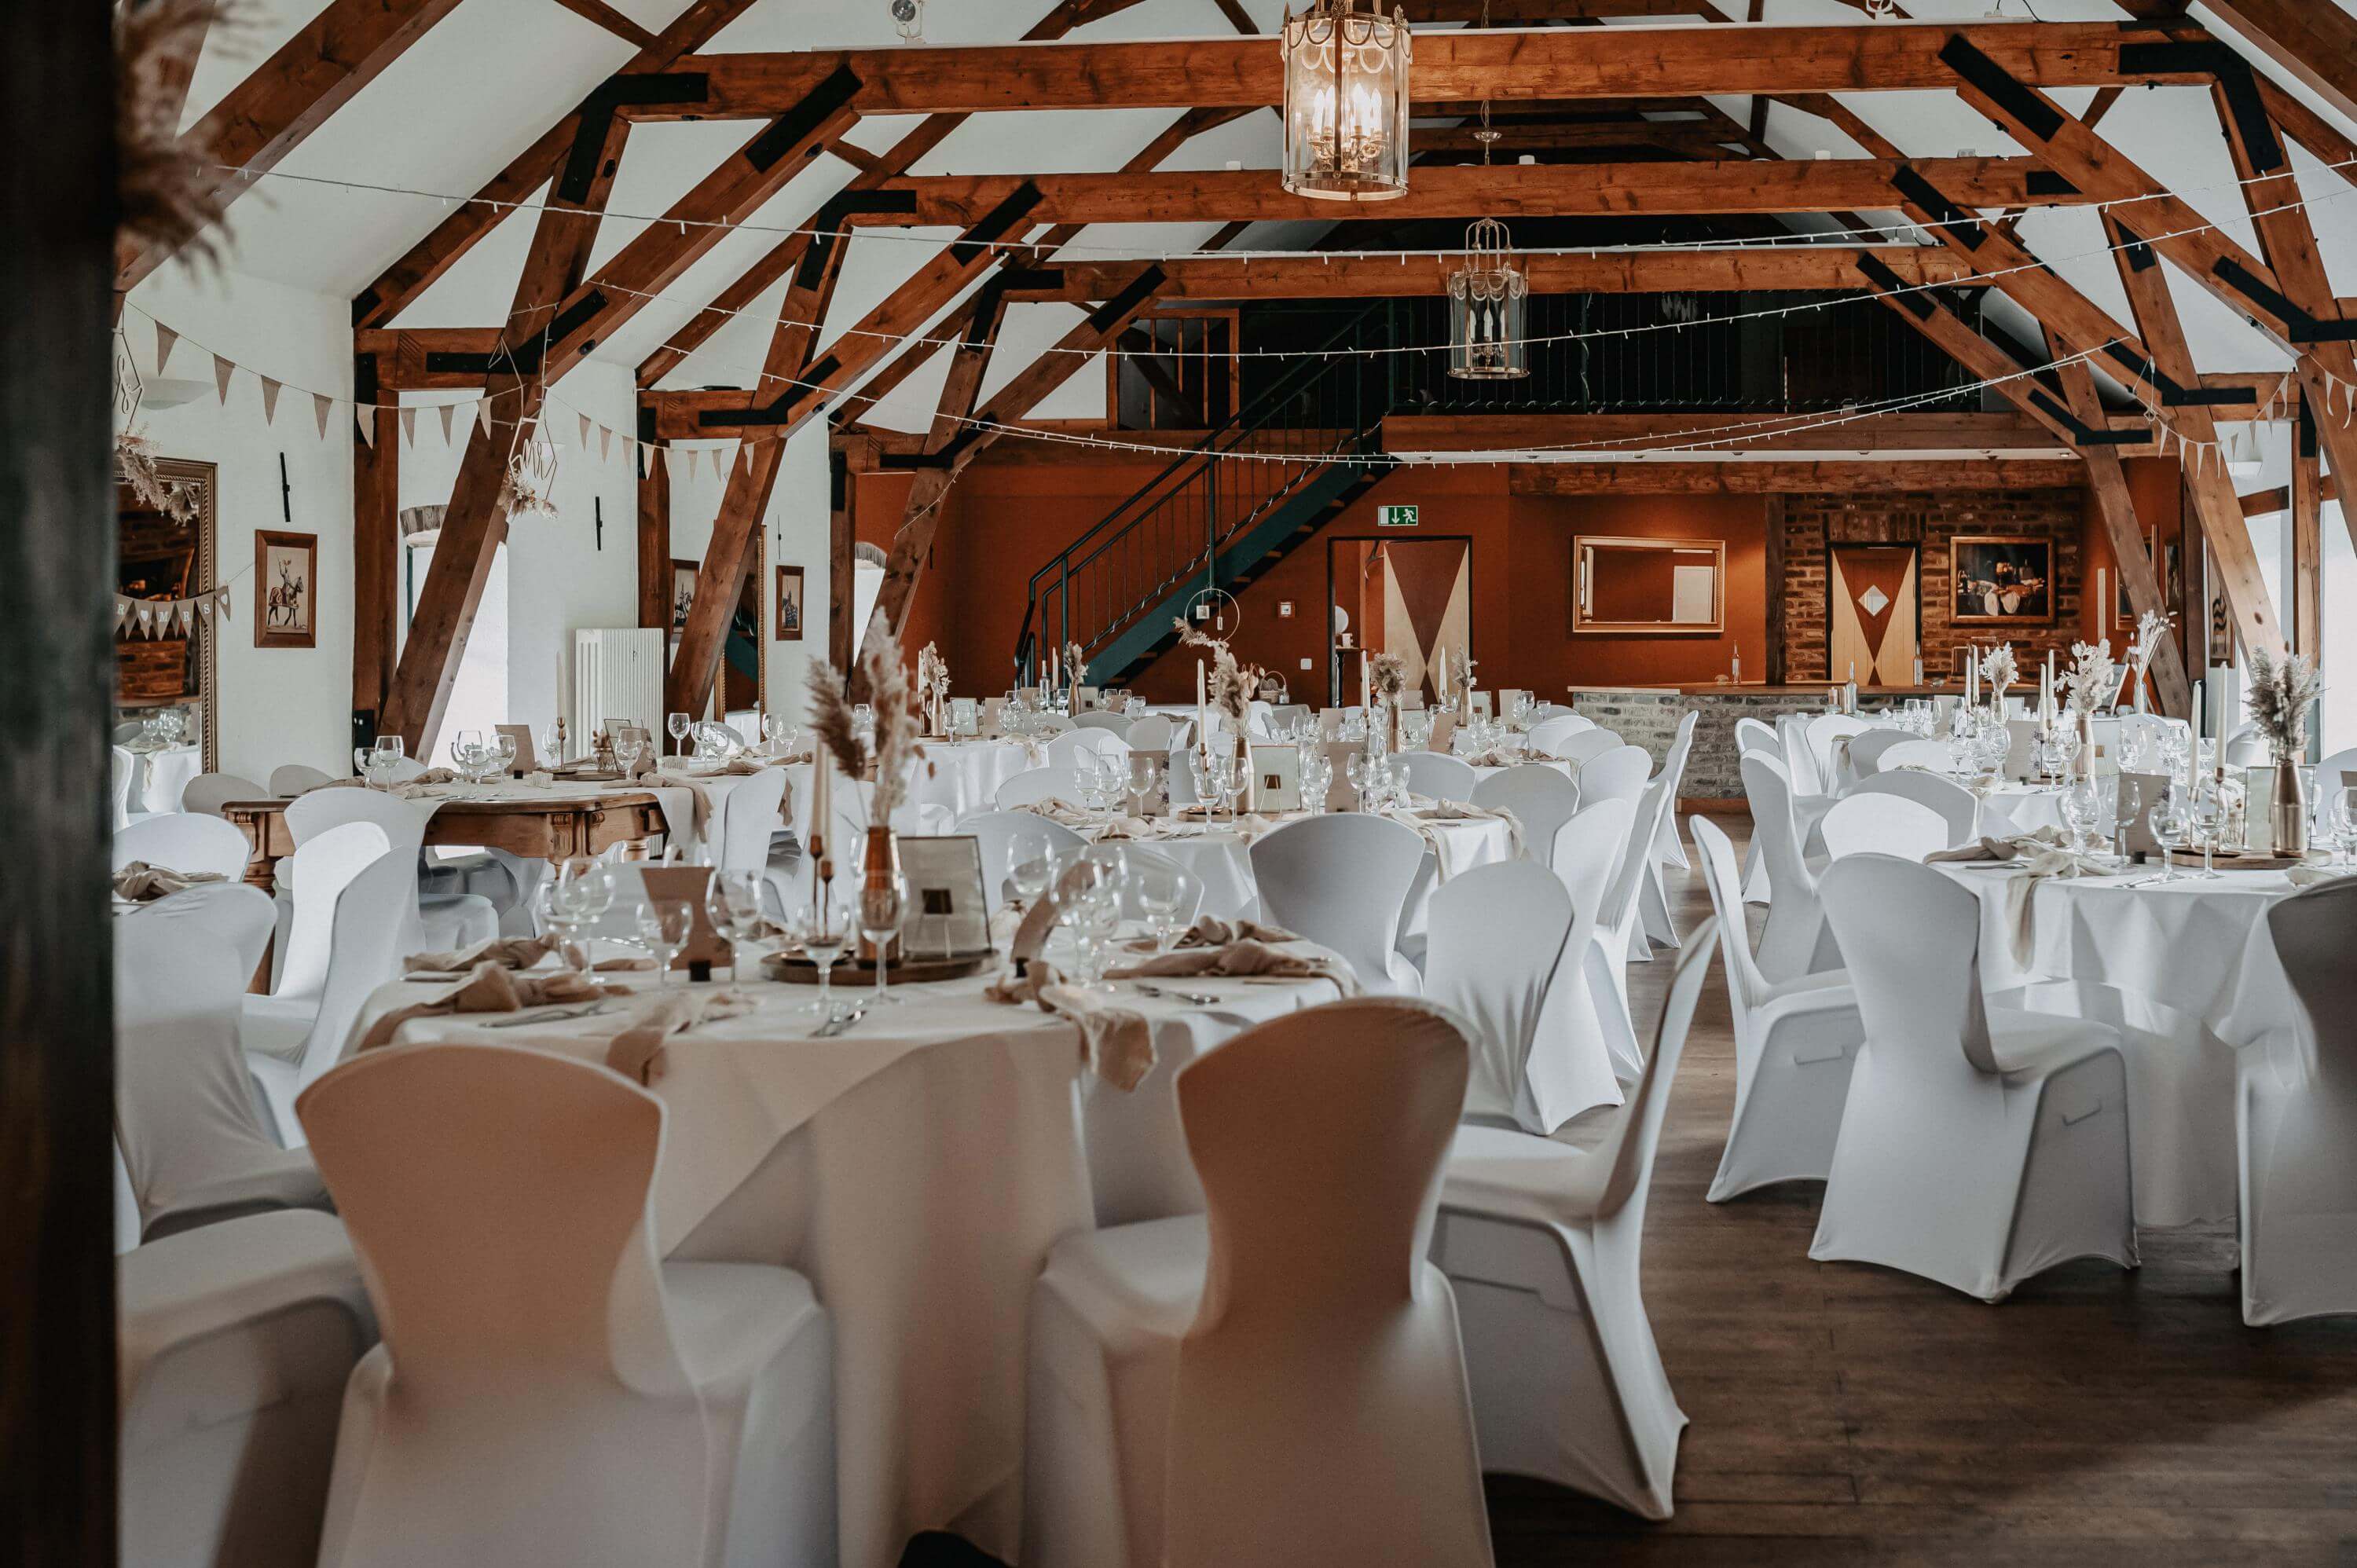 Die große helle Scheune mit Holzbalken der Hochzeitslocation La Maison Blanche  ist mit runden Esstischen und Stühlen mit weißen Hussen im Vintage Stil ausgeschmückt.